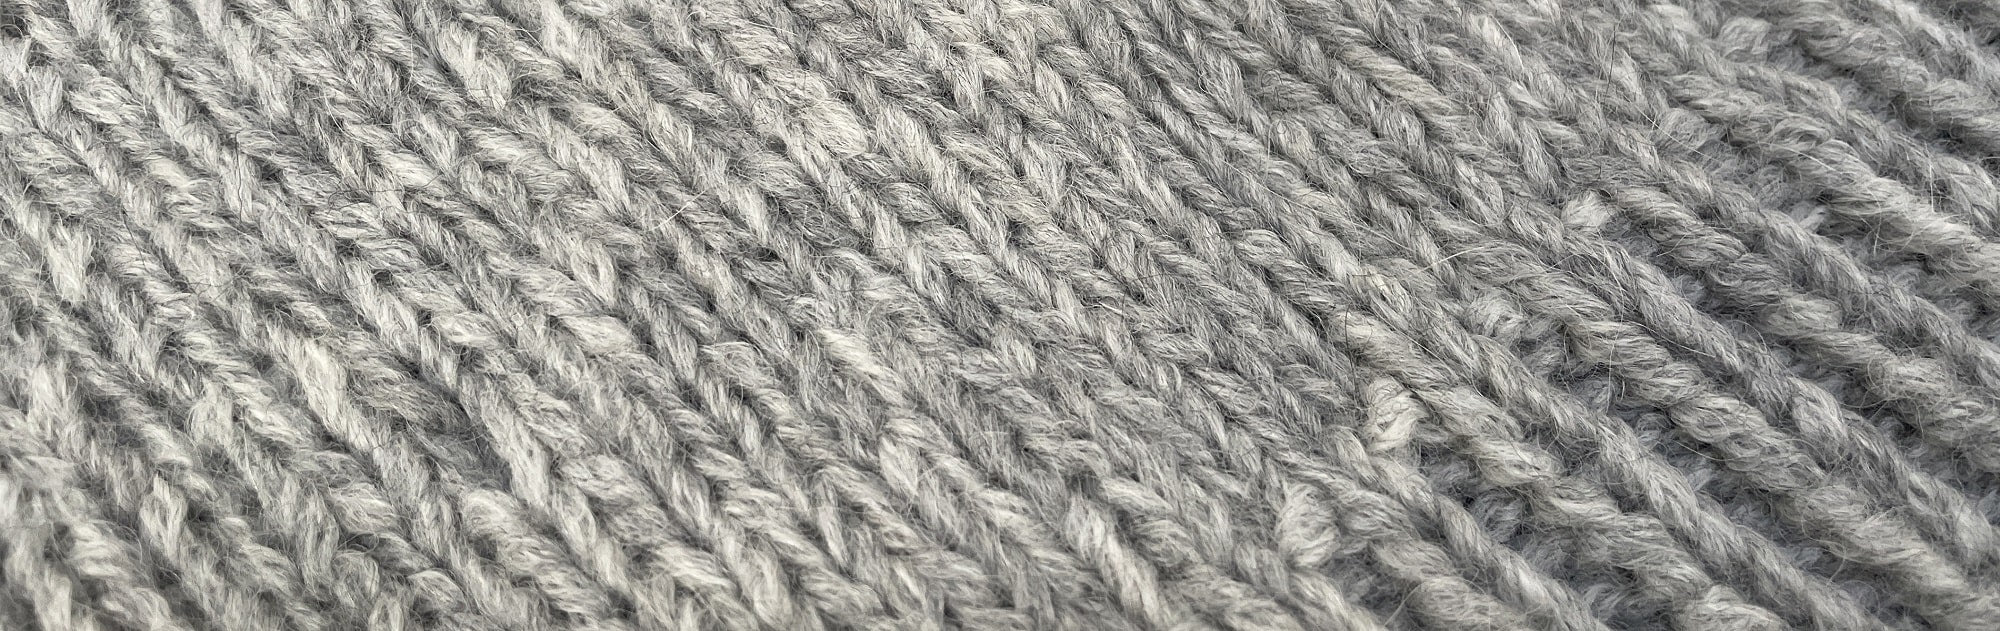 Constellation Gloves (Knit) – Lion Brand Yarn